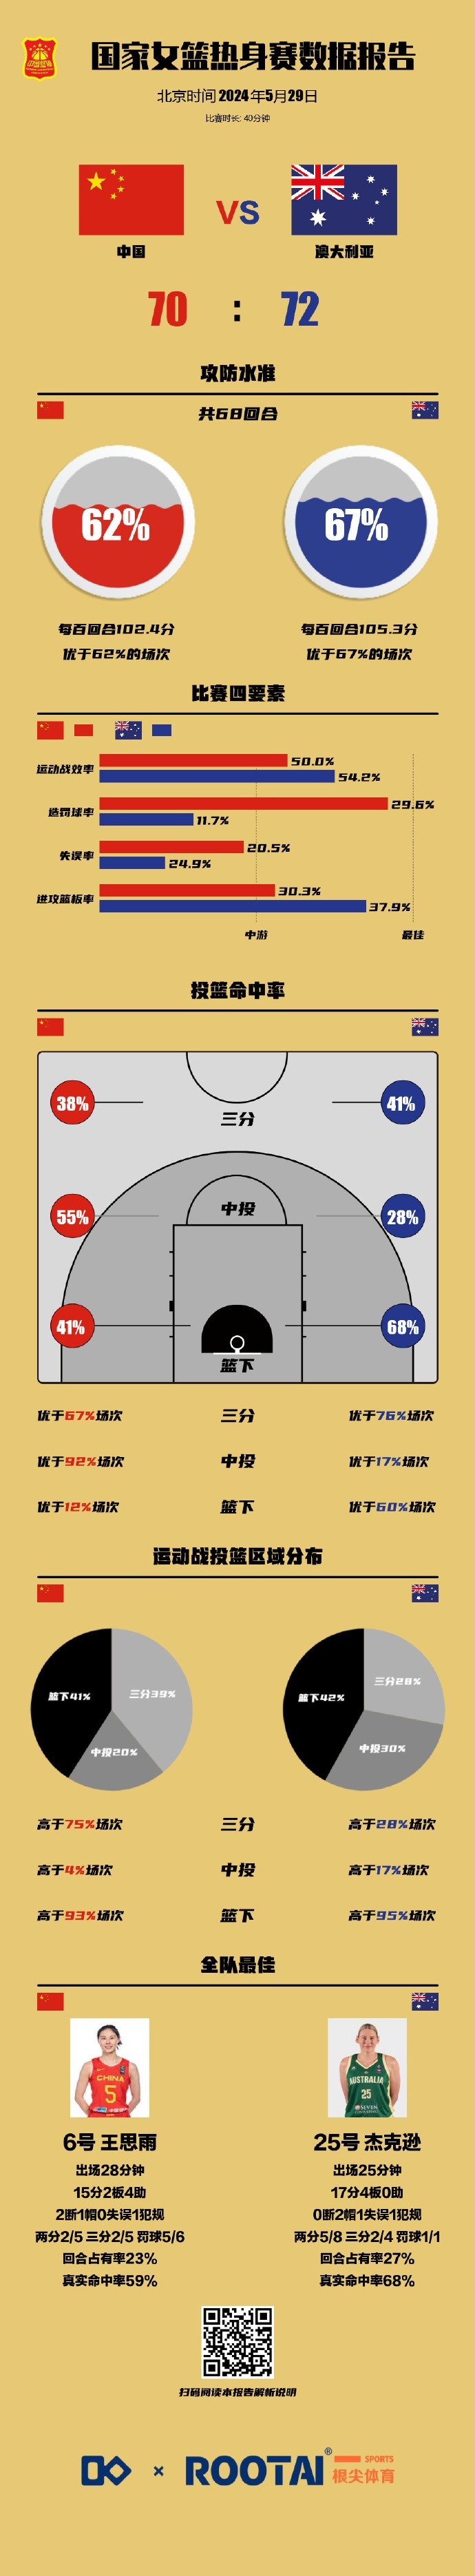 中国女篮热身赛挡拆持球16次进攻机会只拿到8分 包括篮下7投1中